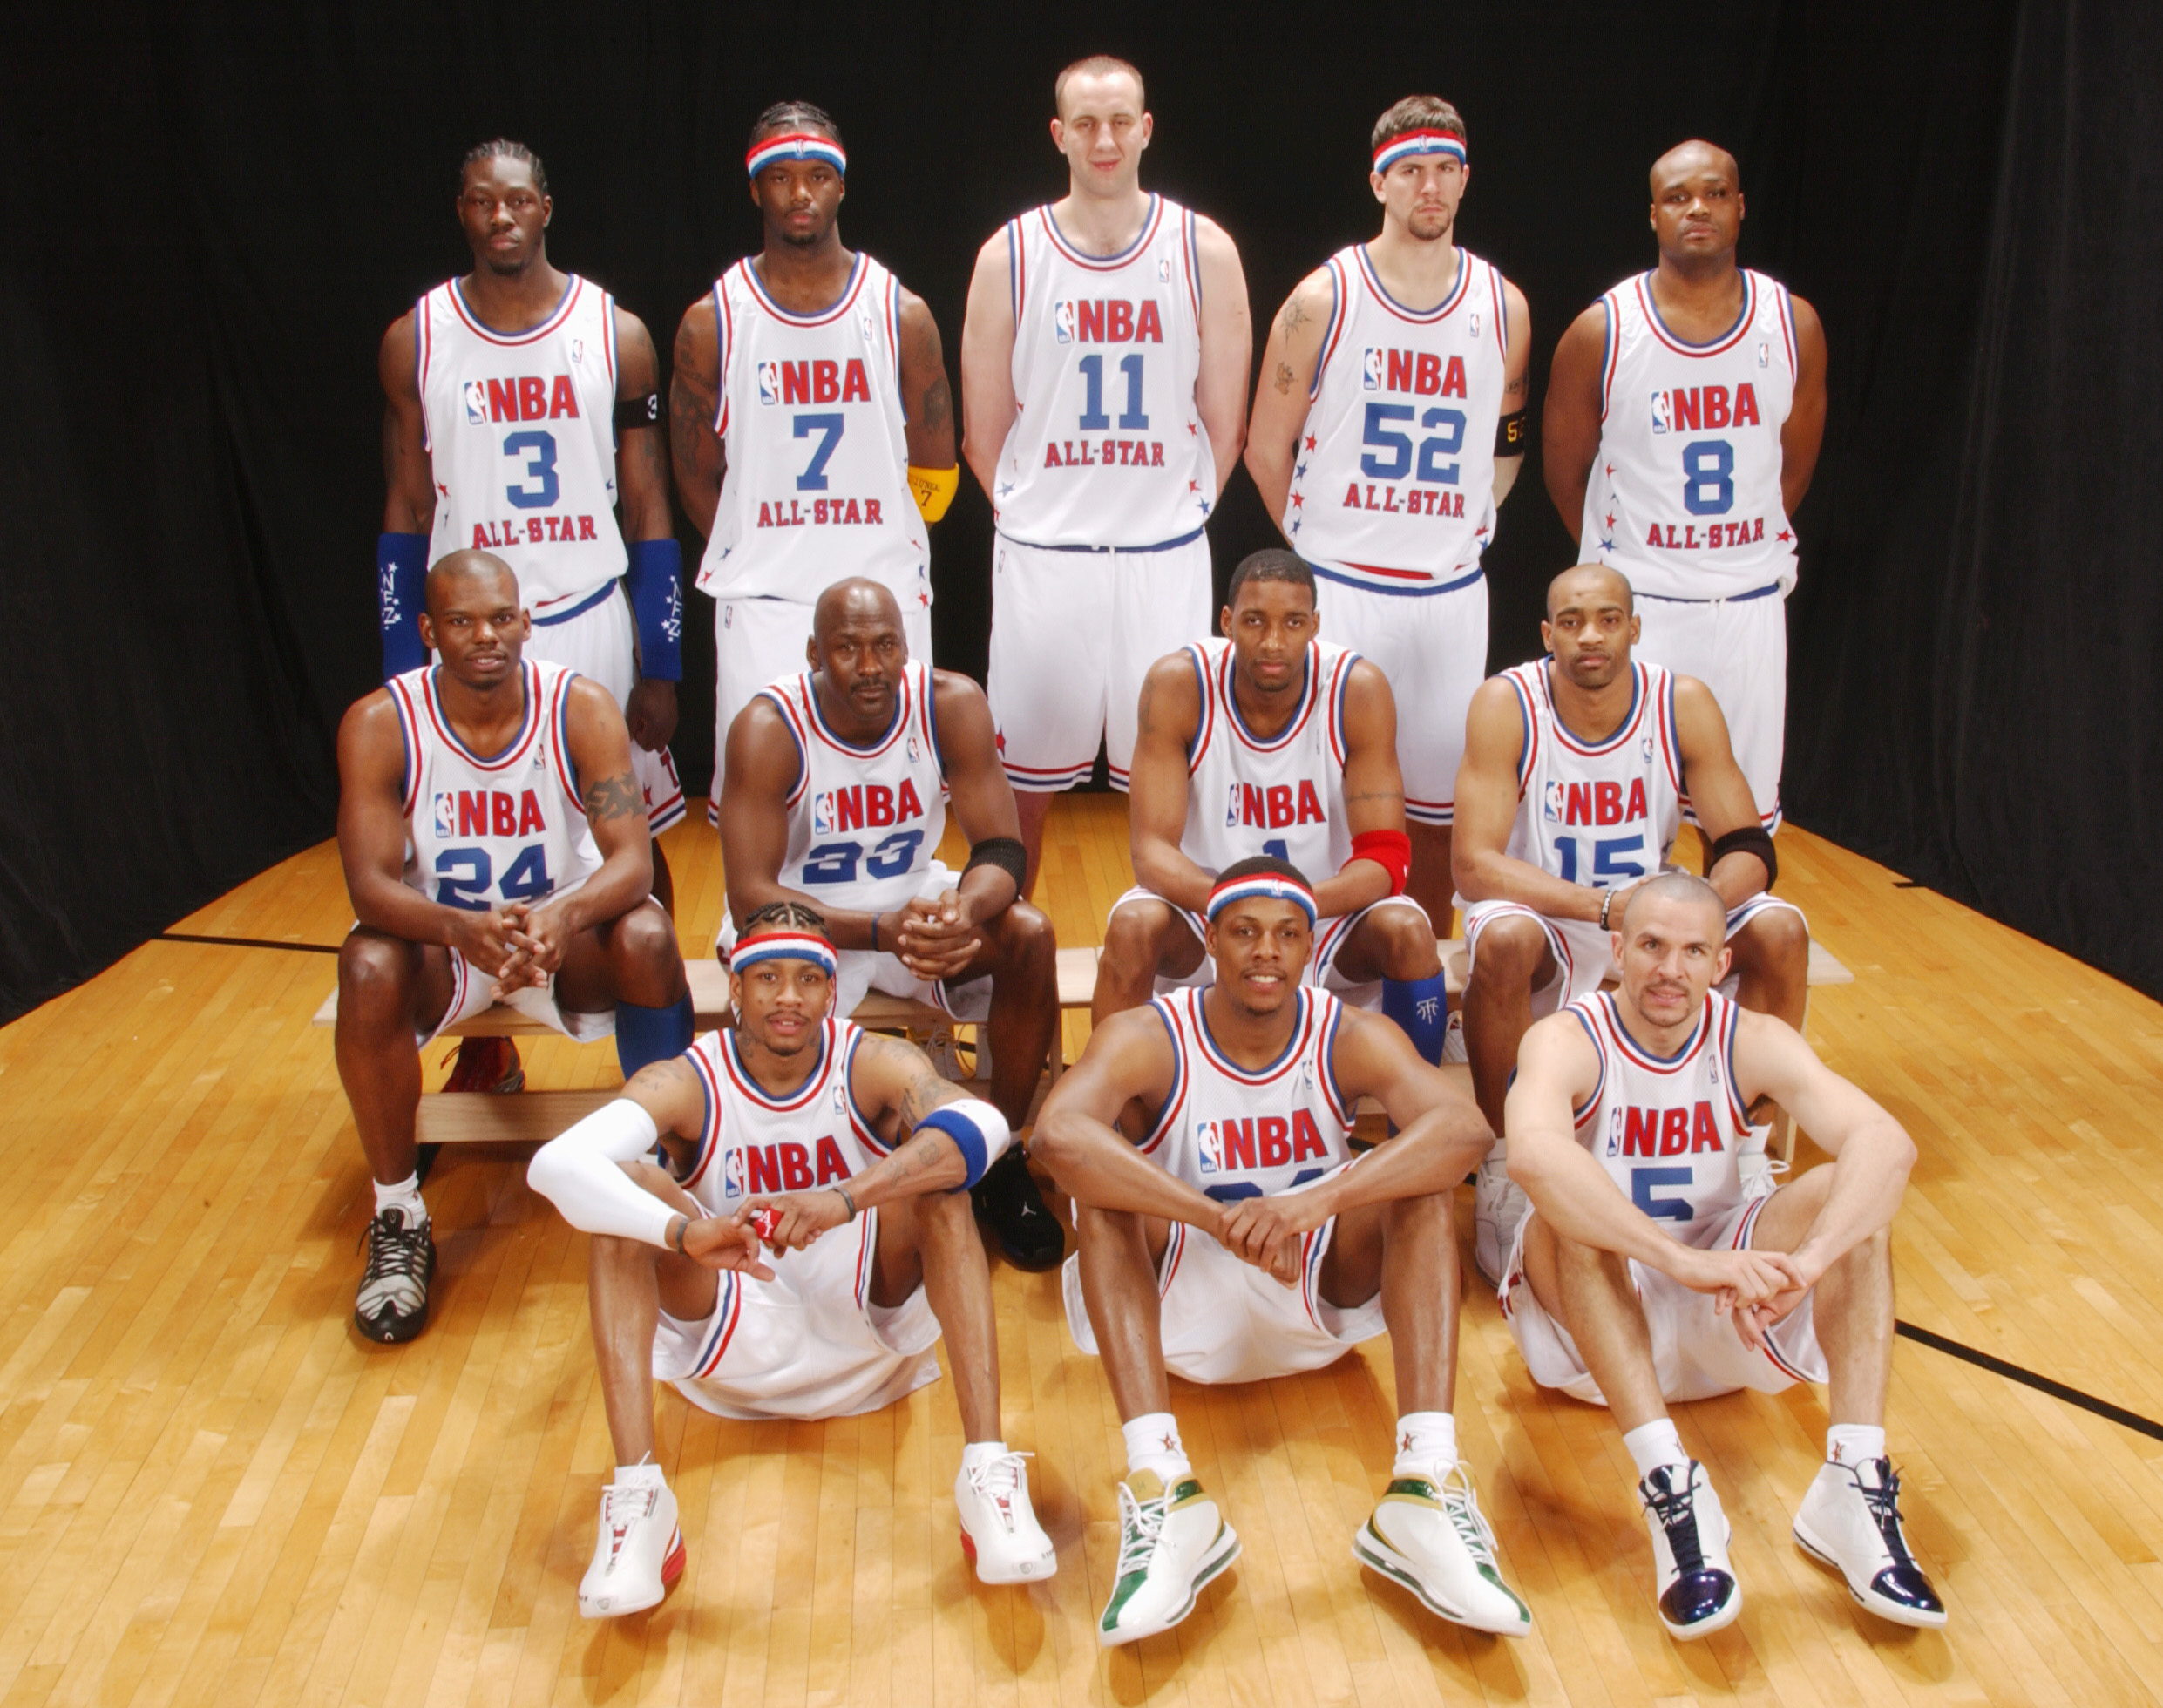 Kobe Bryant NBA all-star game 2003